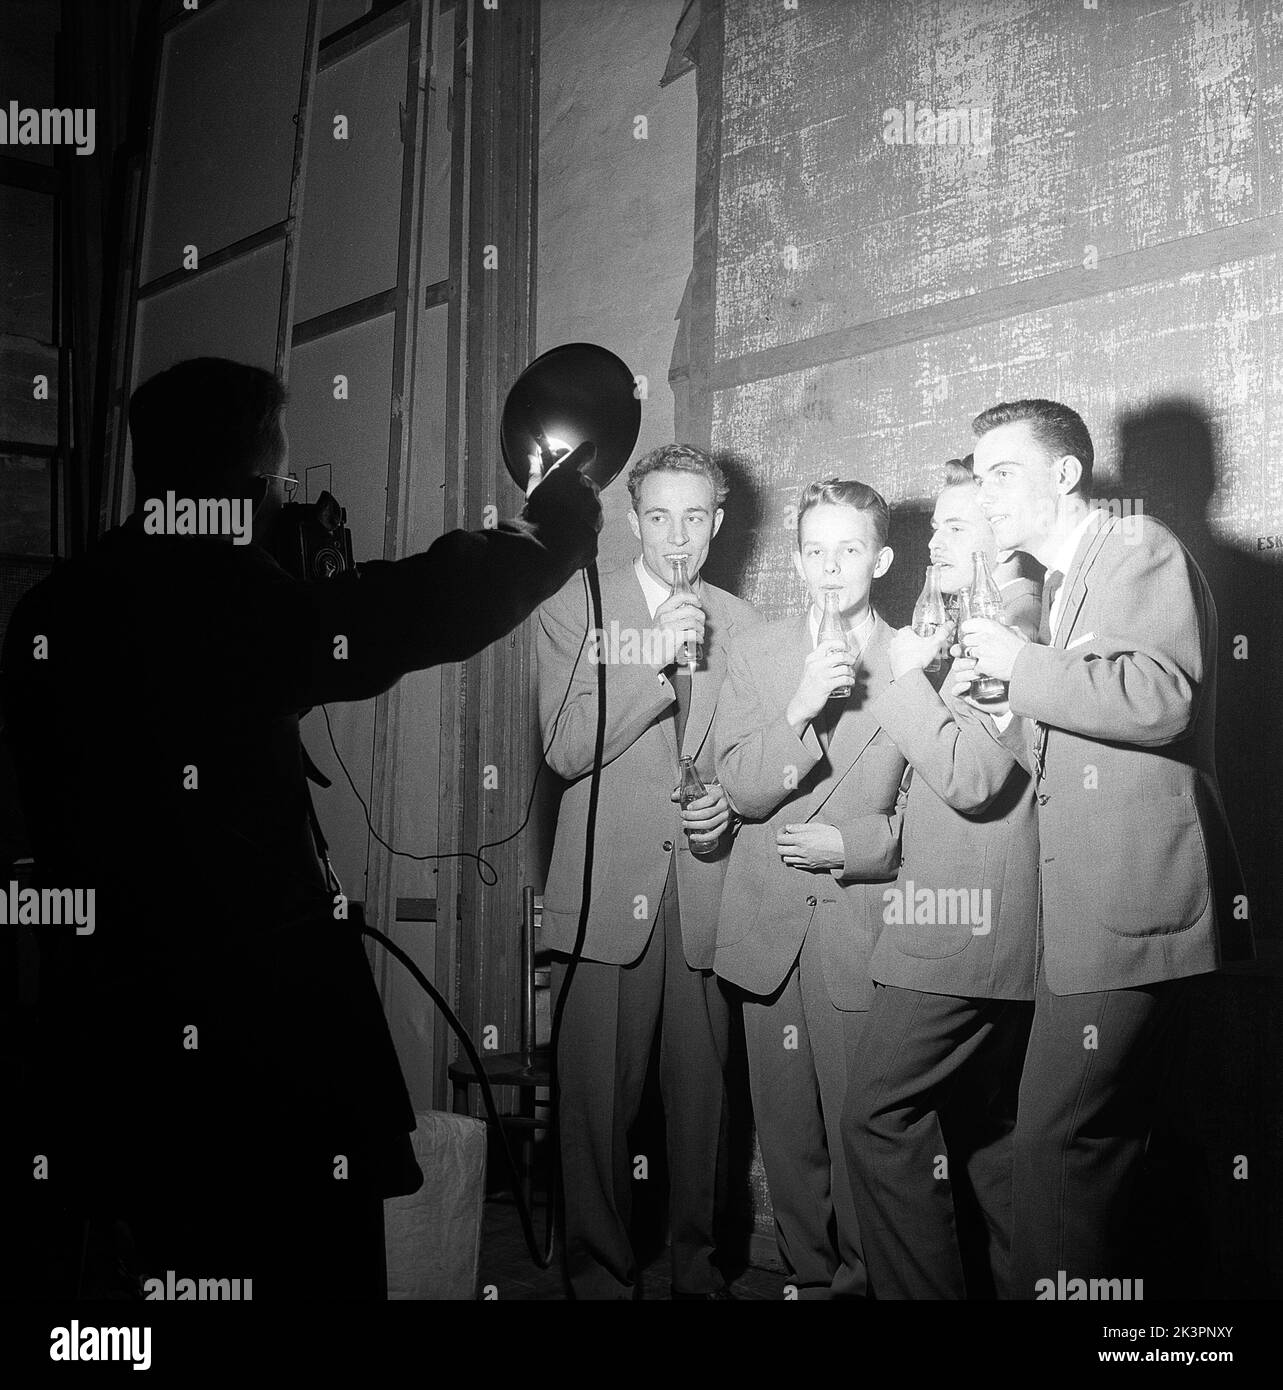 1950s Talente. Eine Gruppe von vier jungen Männern tritt in eine Talentshow ein und spielt Musik, die in Coca-Cola-Flaschen weht. Da die Flaschen mit unterschiedlichen Wasserständen gefüllt sind, machen sie beim Aufblasen unterschiedliche Geräusche, genug scheint es, ein Musikstück lang genug zu machen, um damit aufzutreten. Beachten Sie den Trick des Fotografen, andere Fotografen Lichter zu verwenden. Schweden 1954 Kristoffersson Ref. BX37-12 Stockfoto